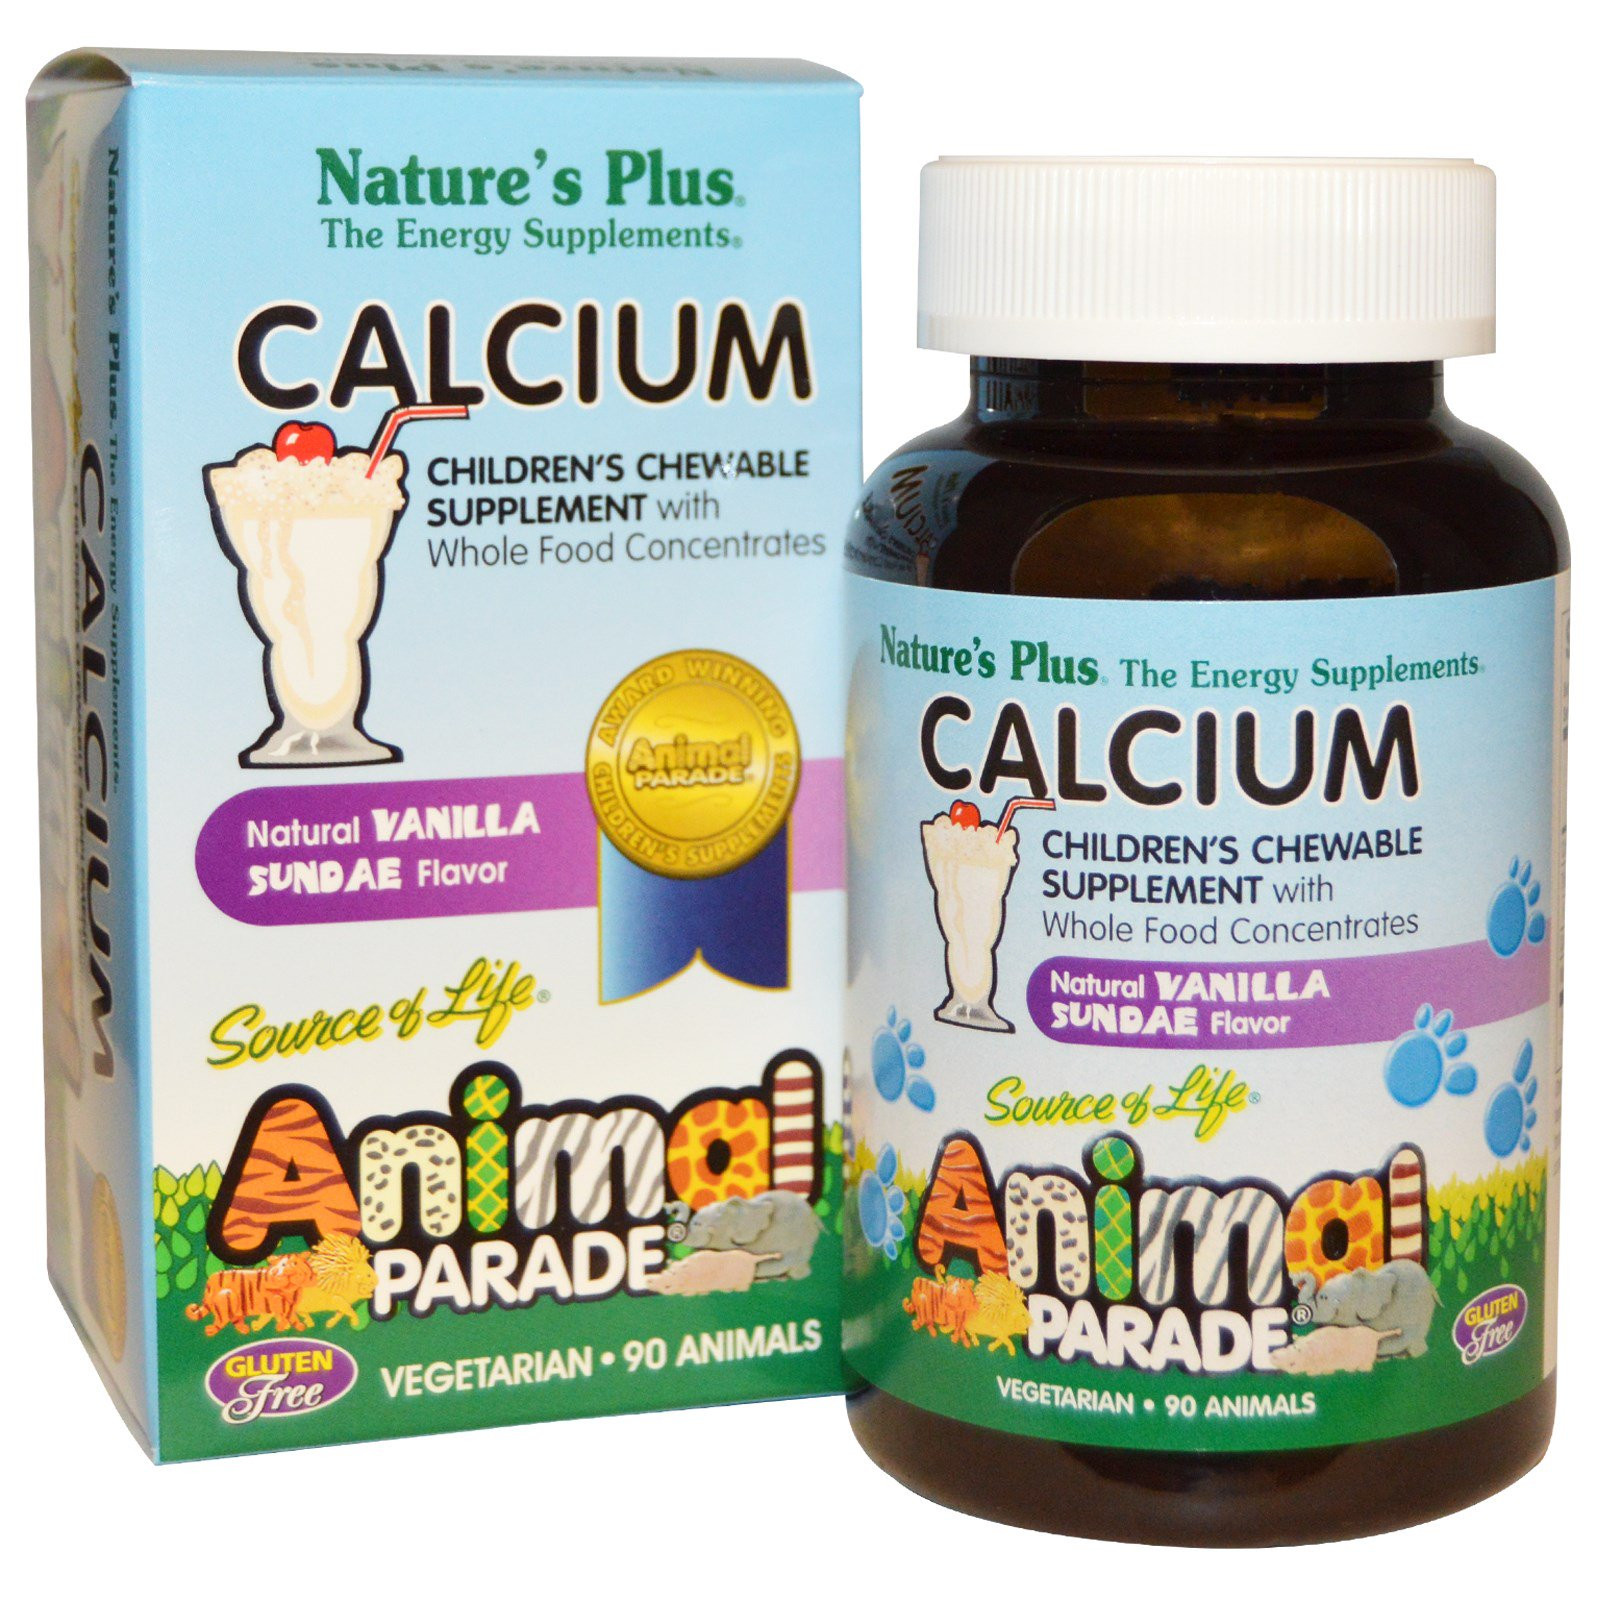 Calcium, Children&apos;s Chewable Supplement, Natural Vanilla Sundae Flavor (90 Animals) - Nature&apos;s Plus